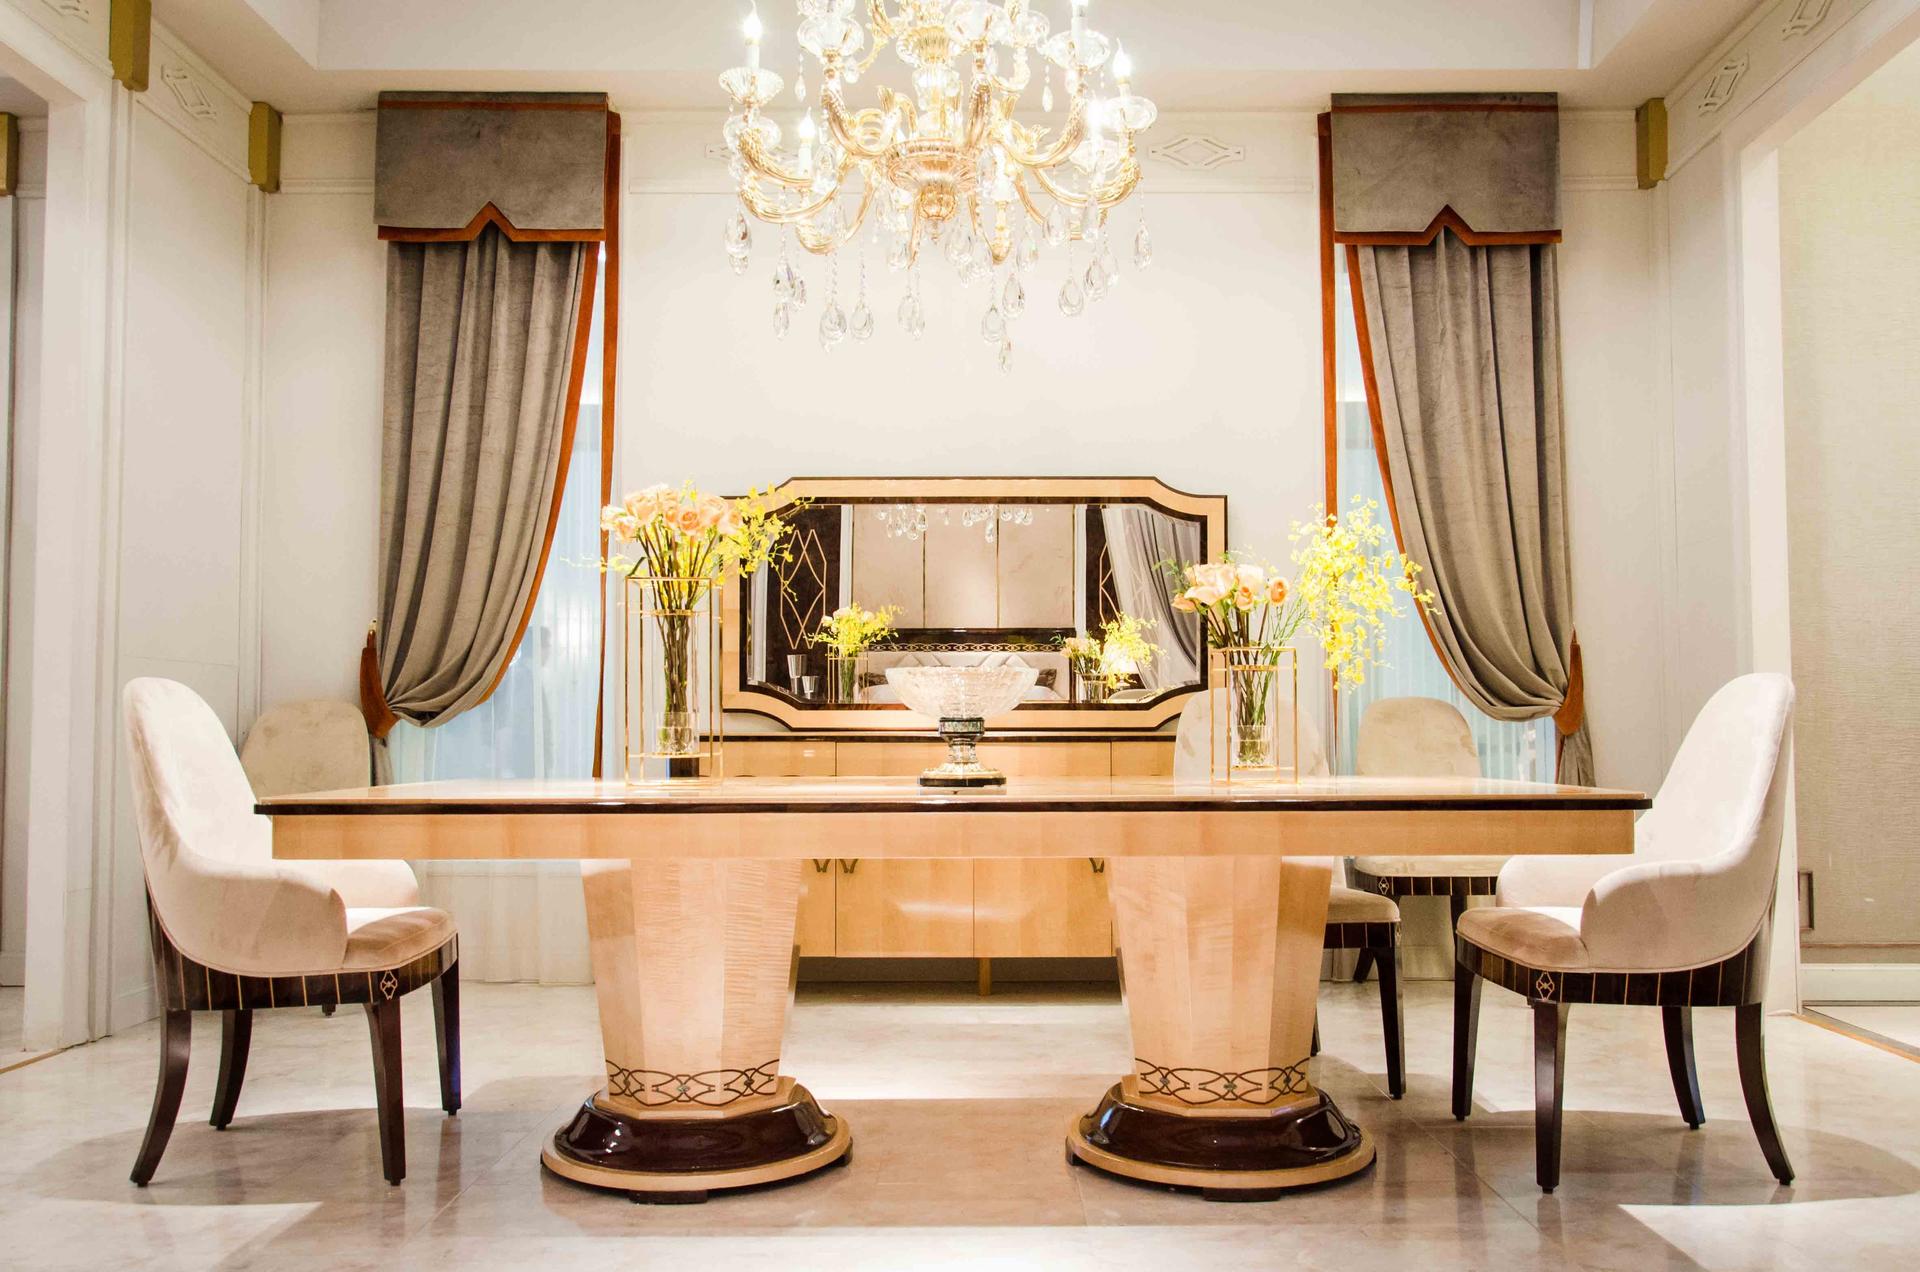 Hot dinette sets furniture dining design Senbetter Brand